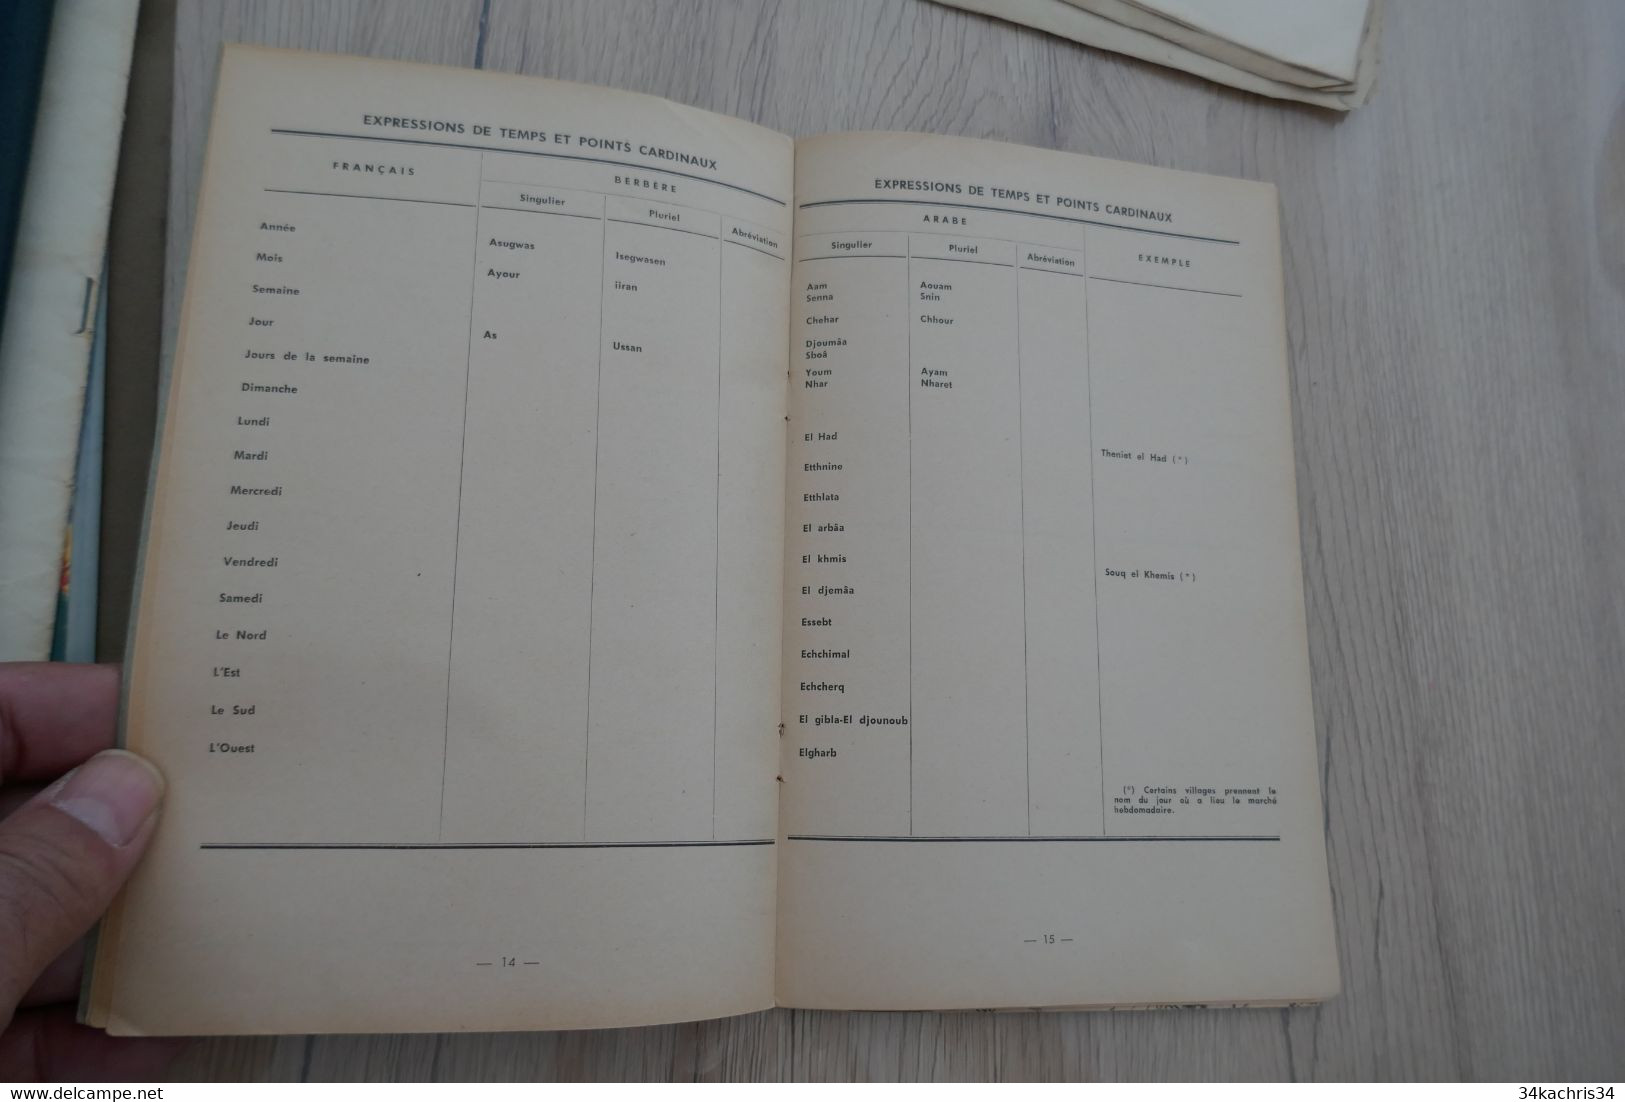 Plaquette 1959 Résumé De Toponymie Arabe Et Berbère Pour Servir à La Lecture Des Cartes A.F.N. 19p+ Carte - Dokumente